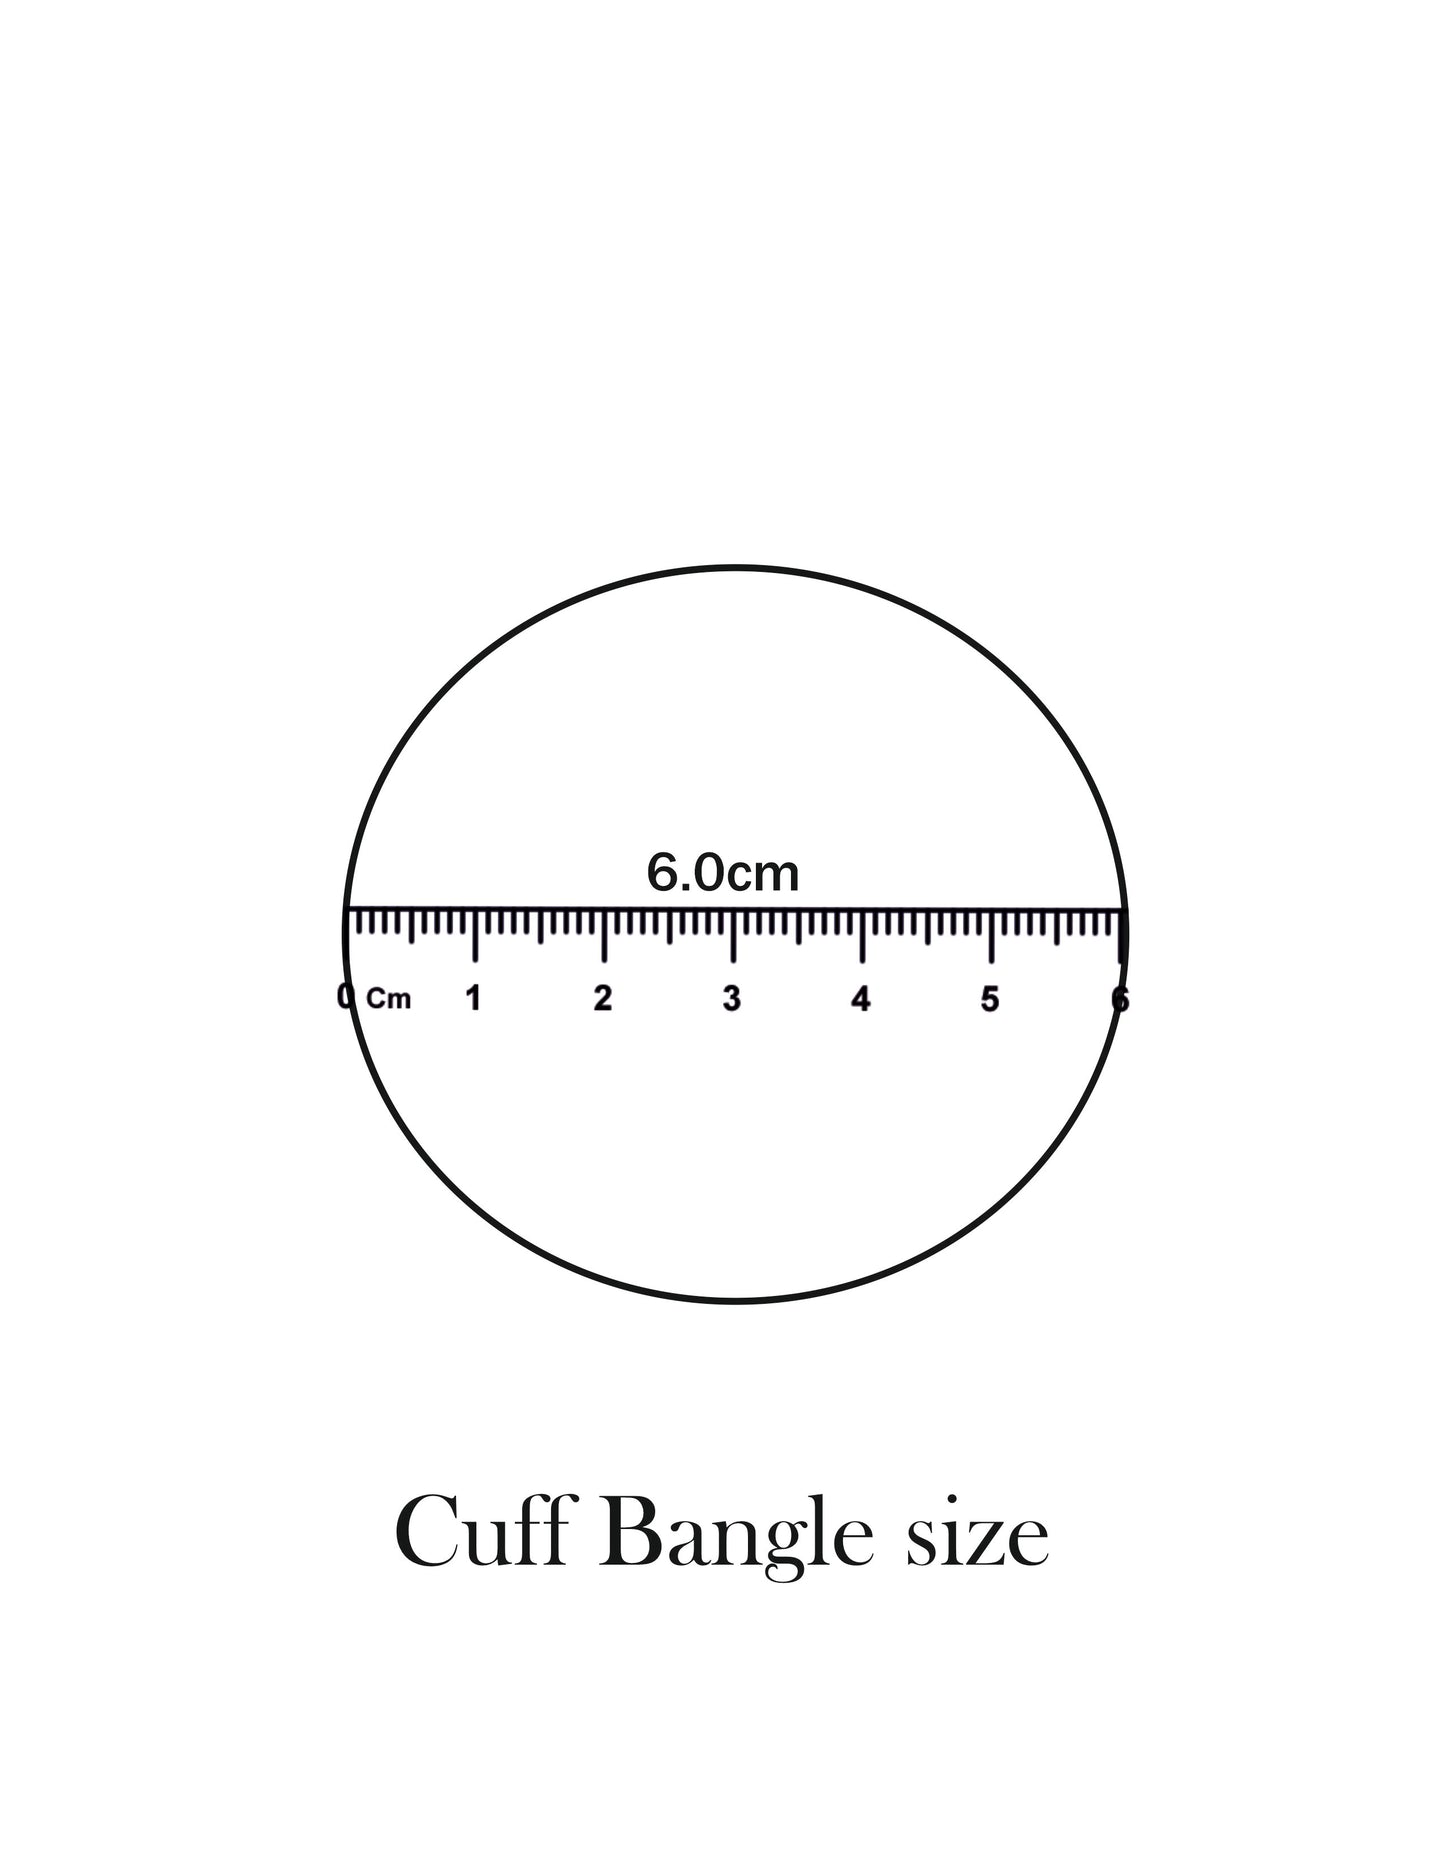 Elvi's Cuff Bangle